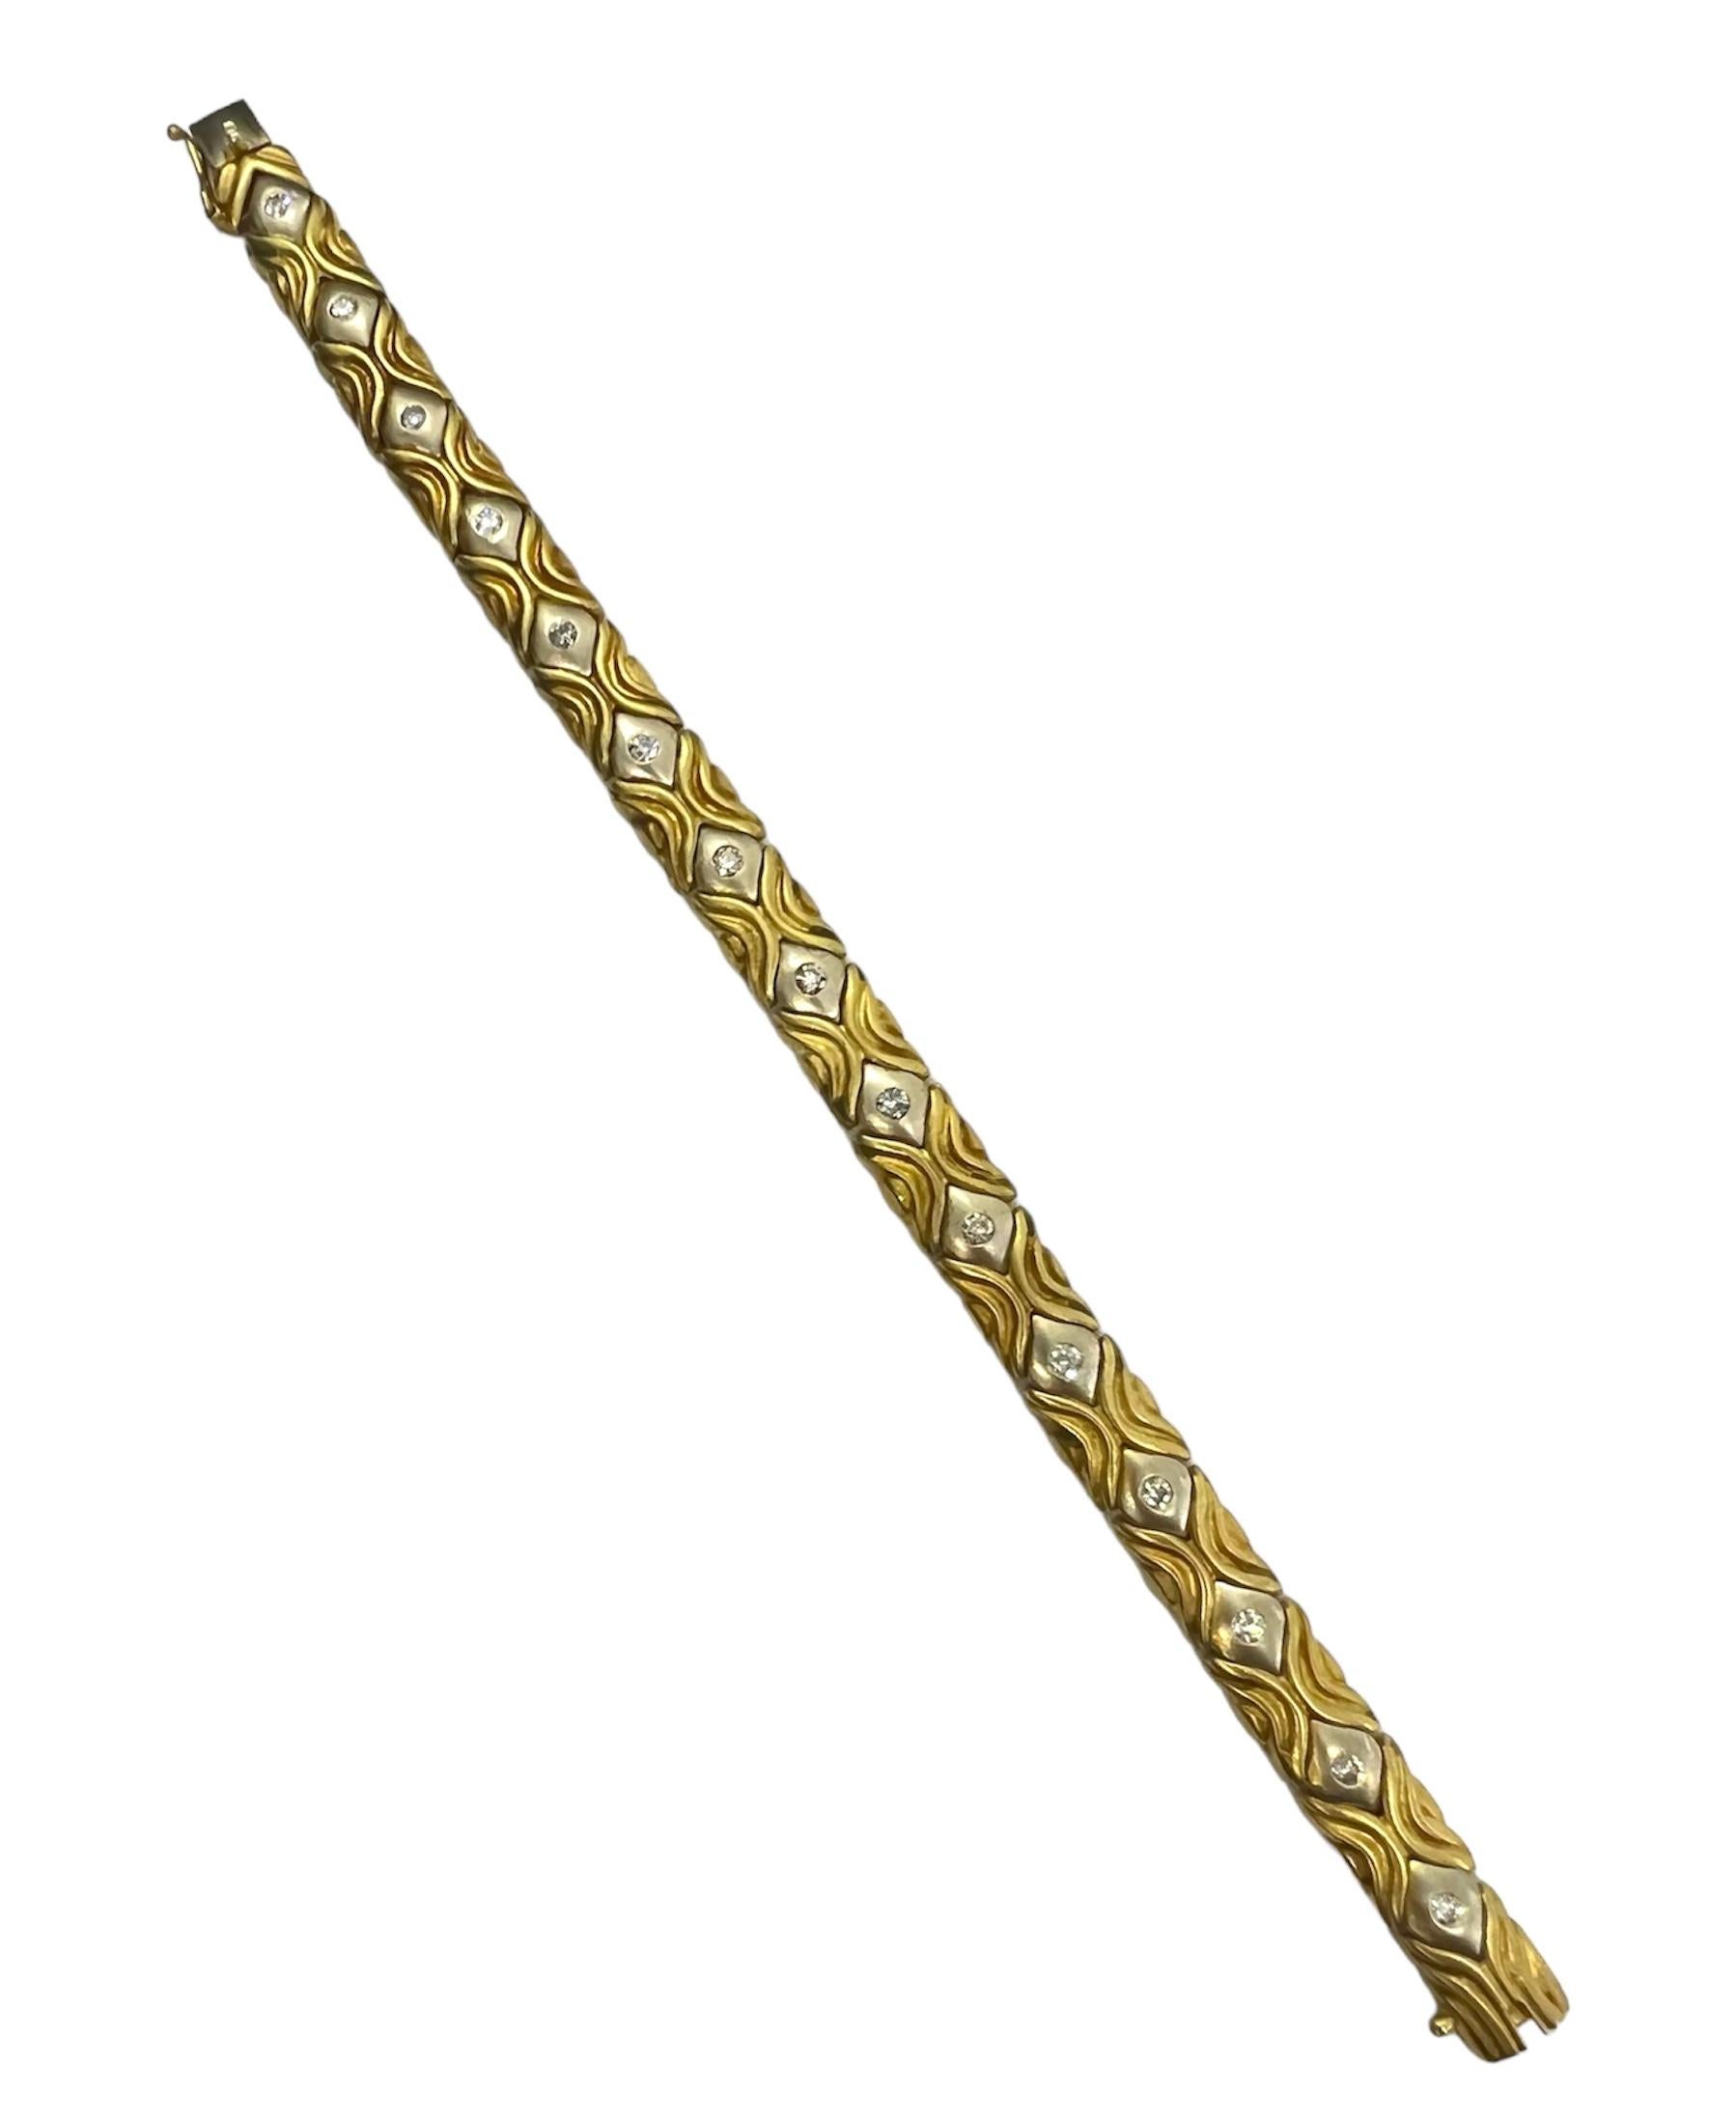 Bracelet en or jaune et or blanc 14K avec diamants.

Sophia D by Joseph Dardashti Ltd est connue dans le monde entier depuis 35 ans et s'inspire du design classique de l'Art déco qui fusionne avec les techniques de fabrication modernes.
